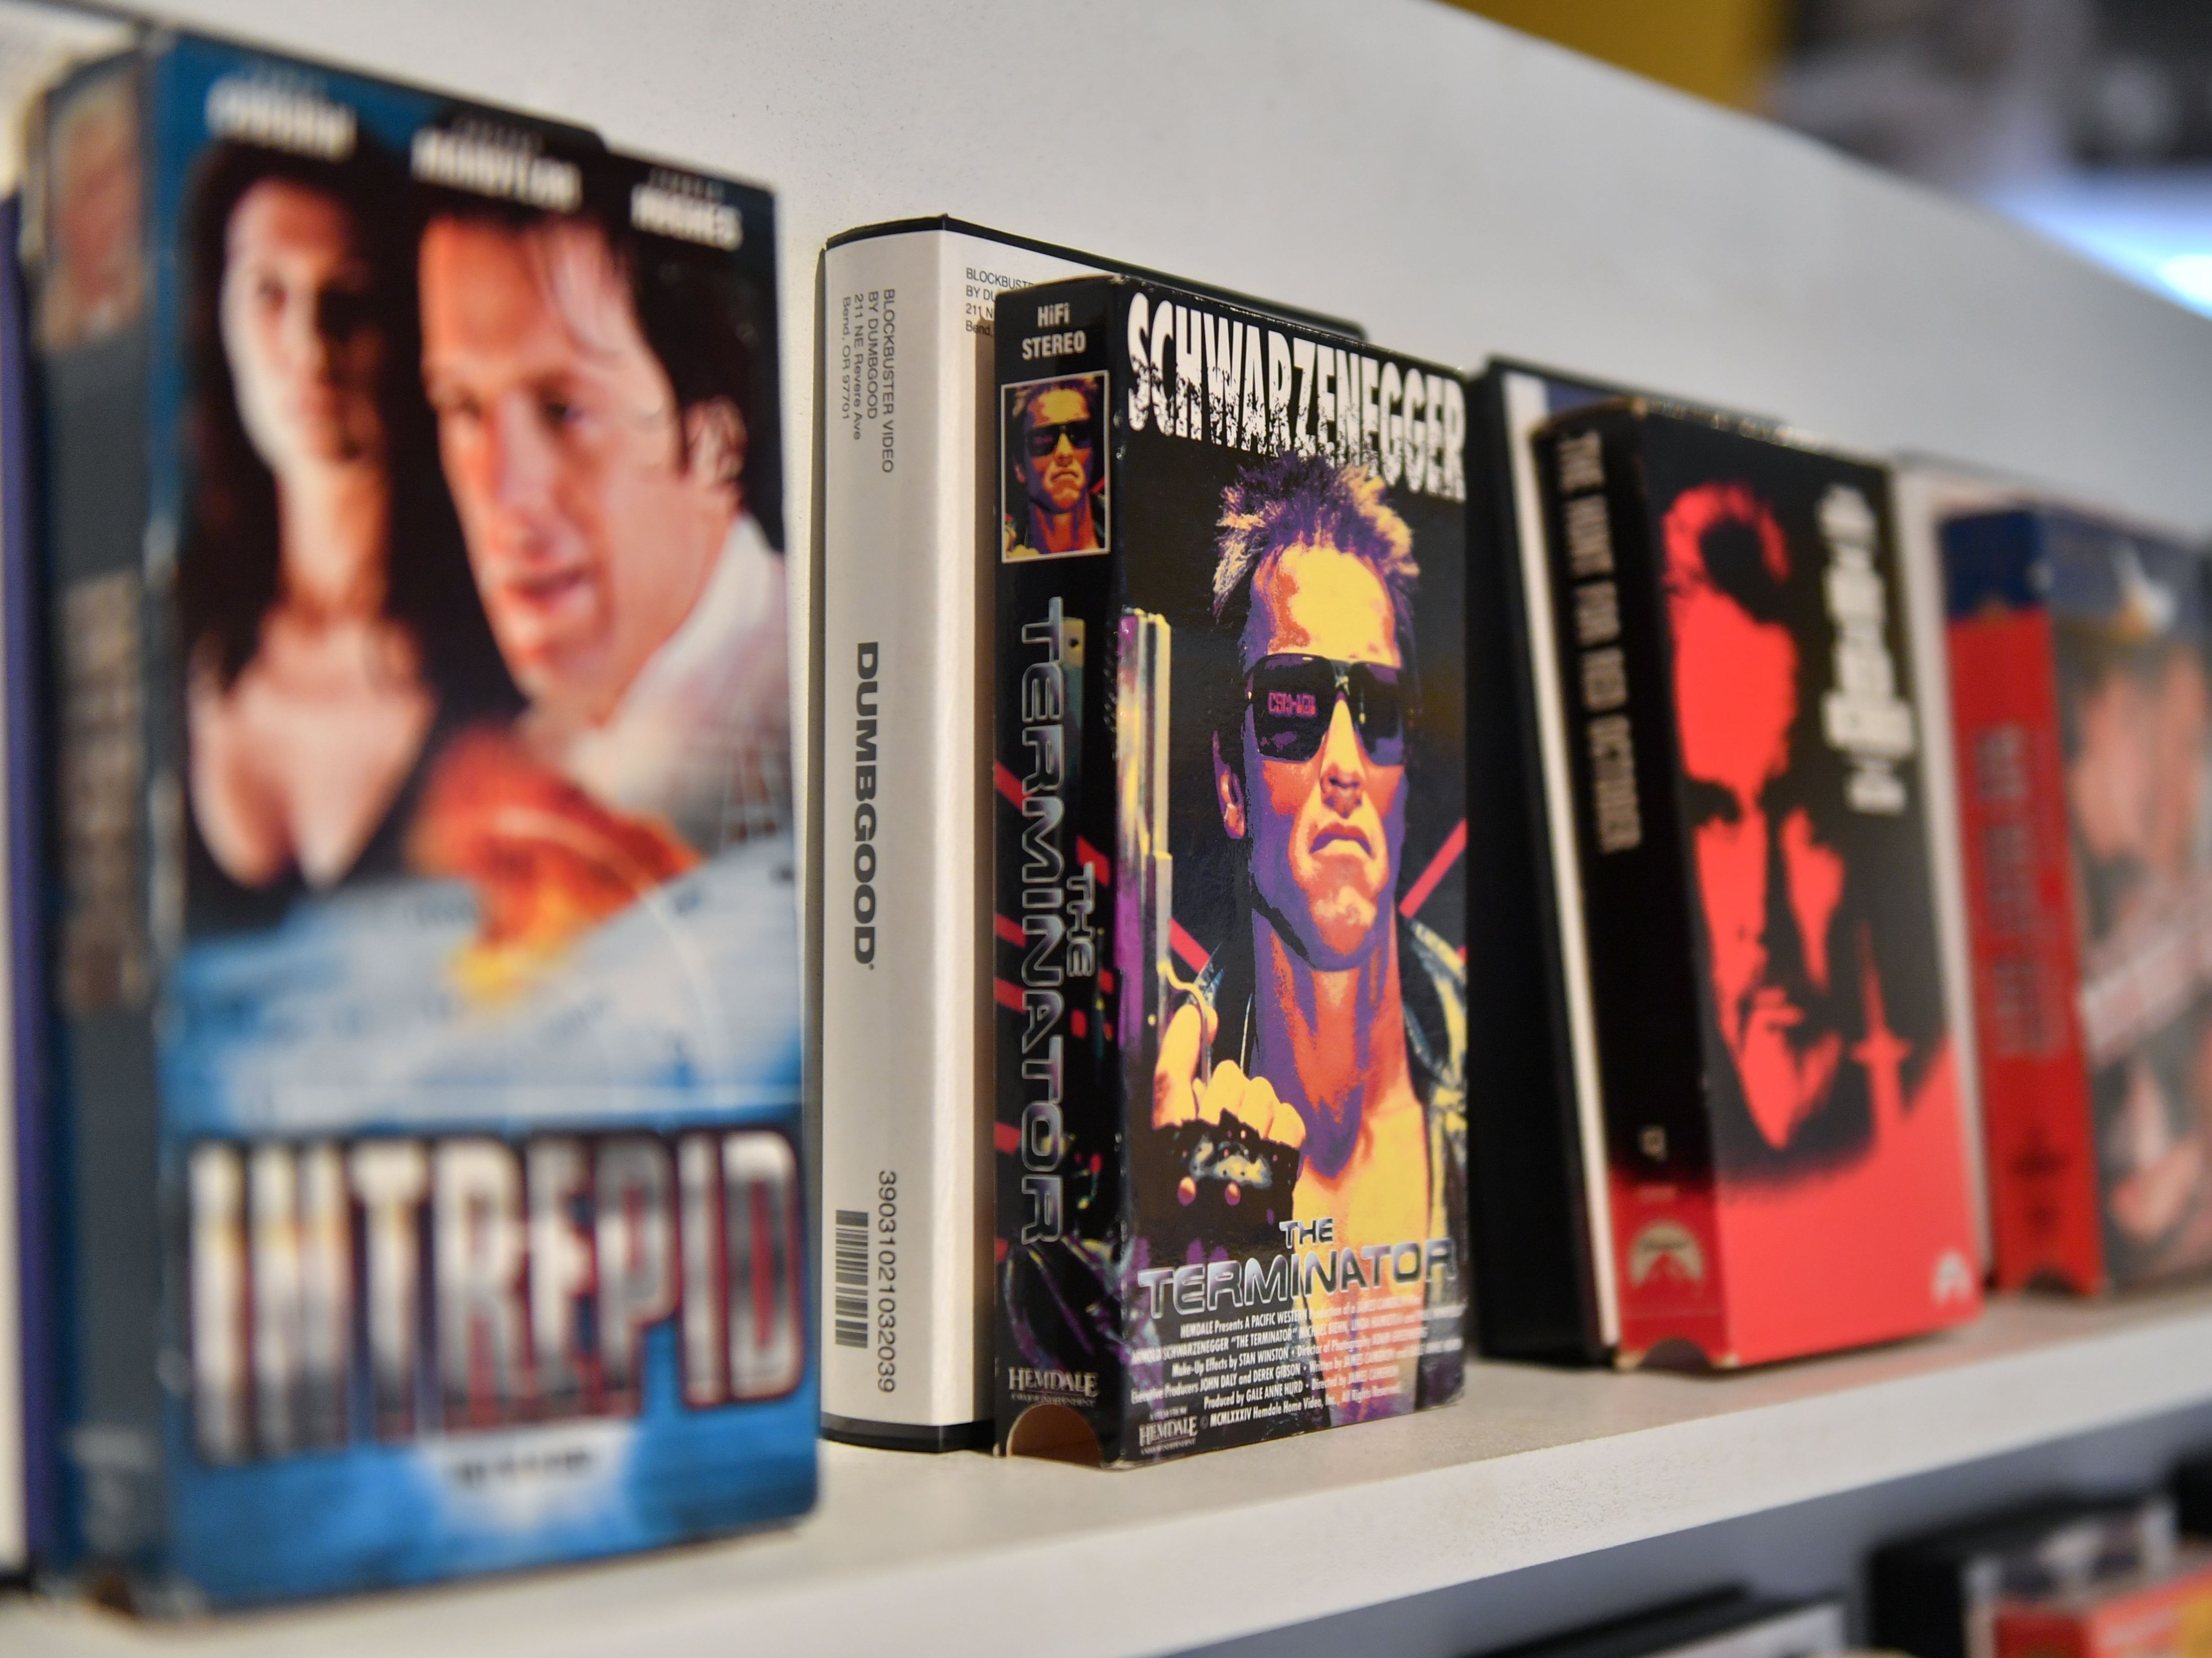 VHS films for rent